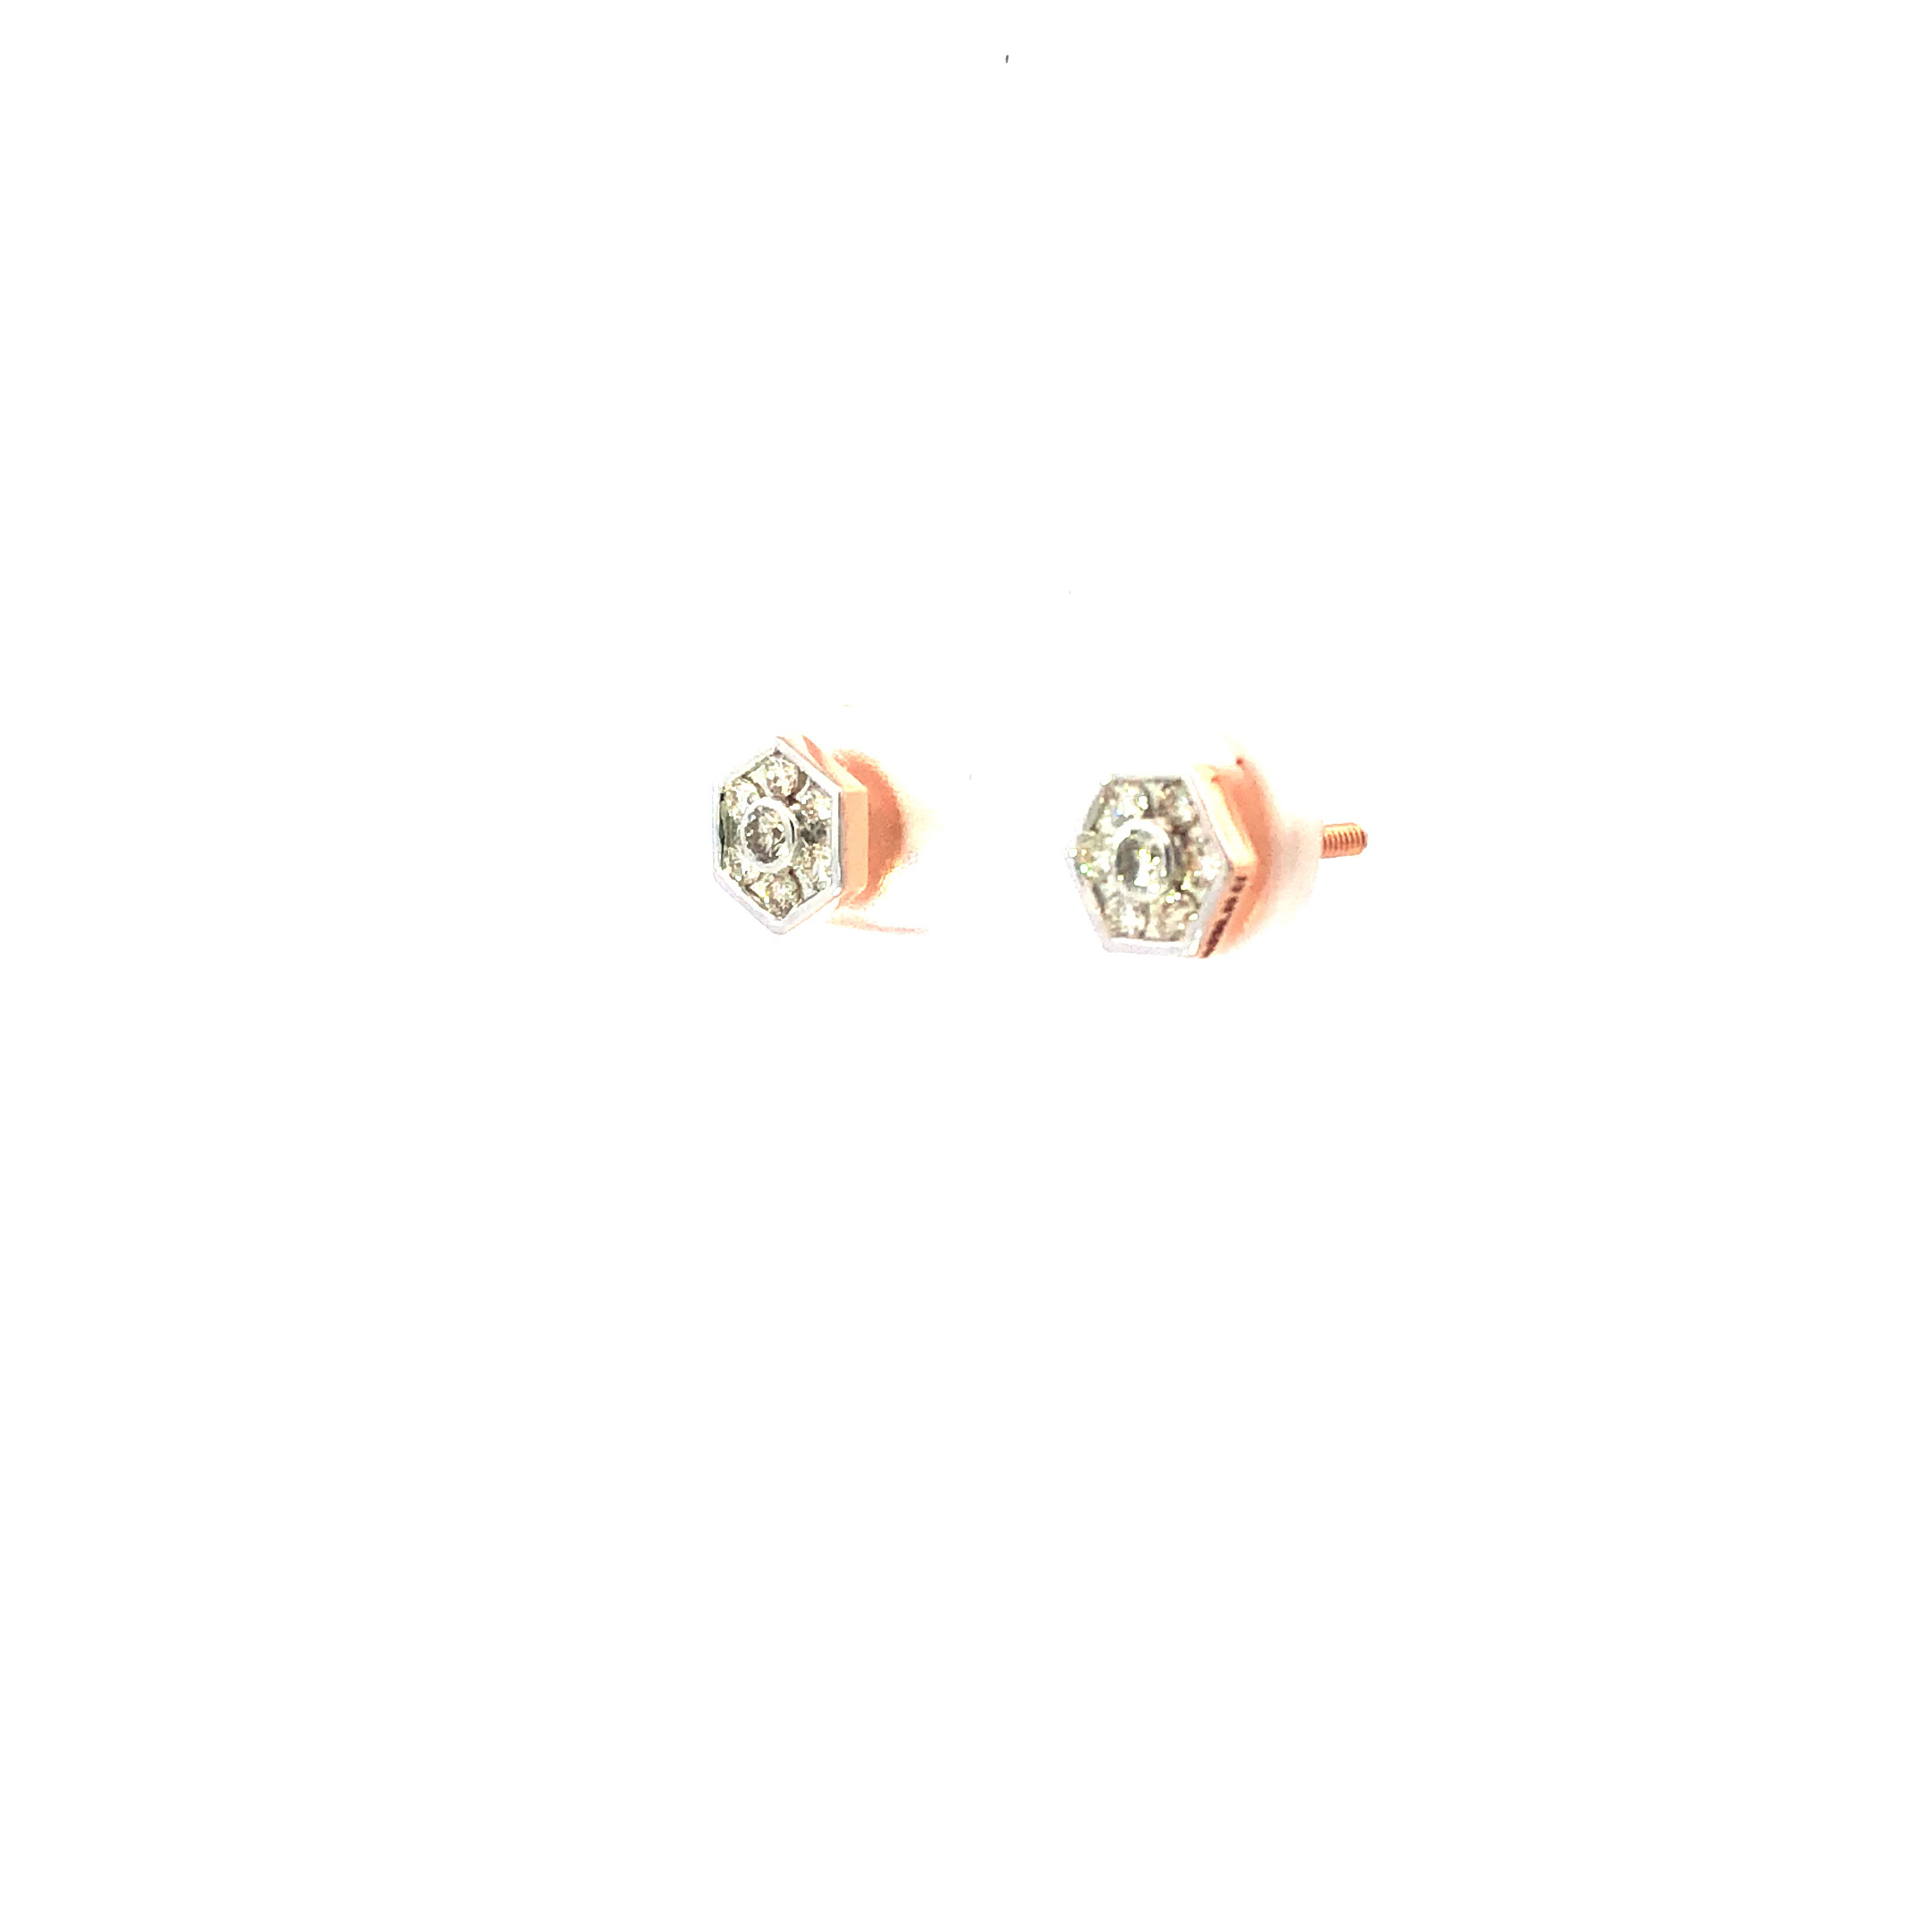 Buy 14Kt Rose Gold Diamond Earrings Online  ORRA